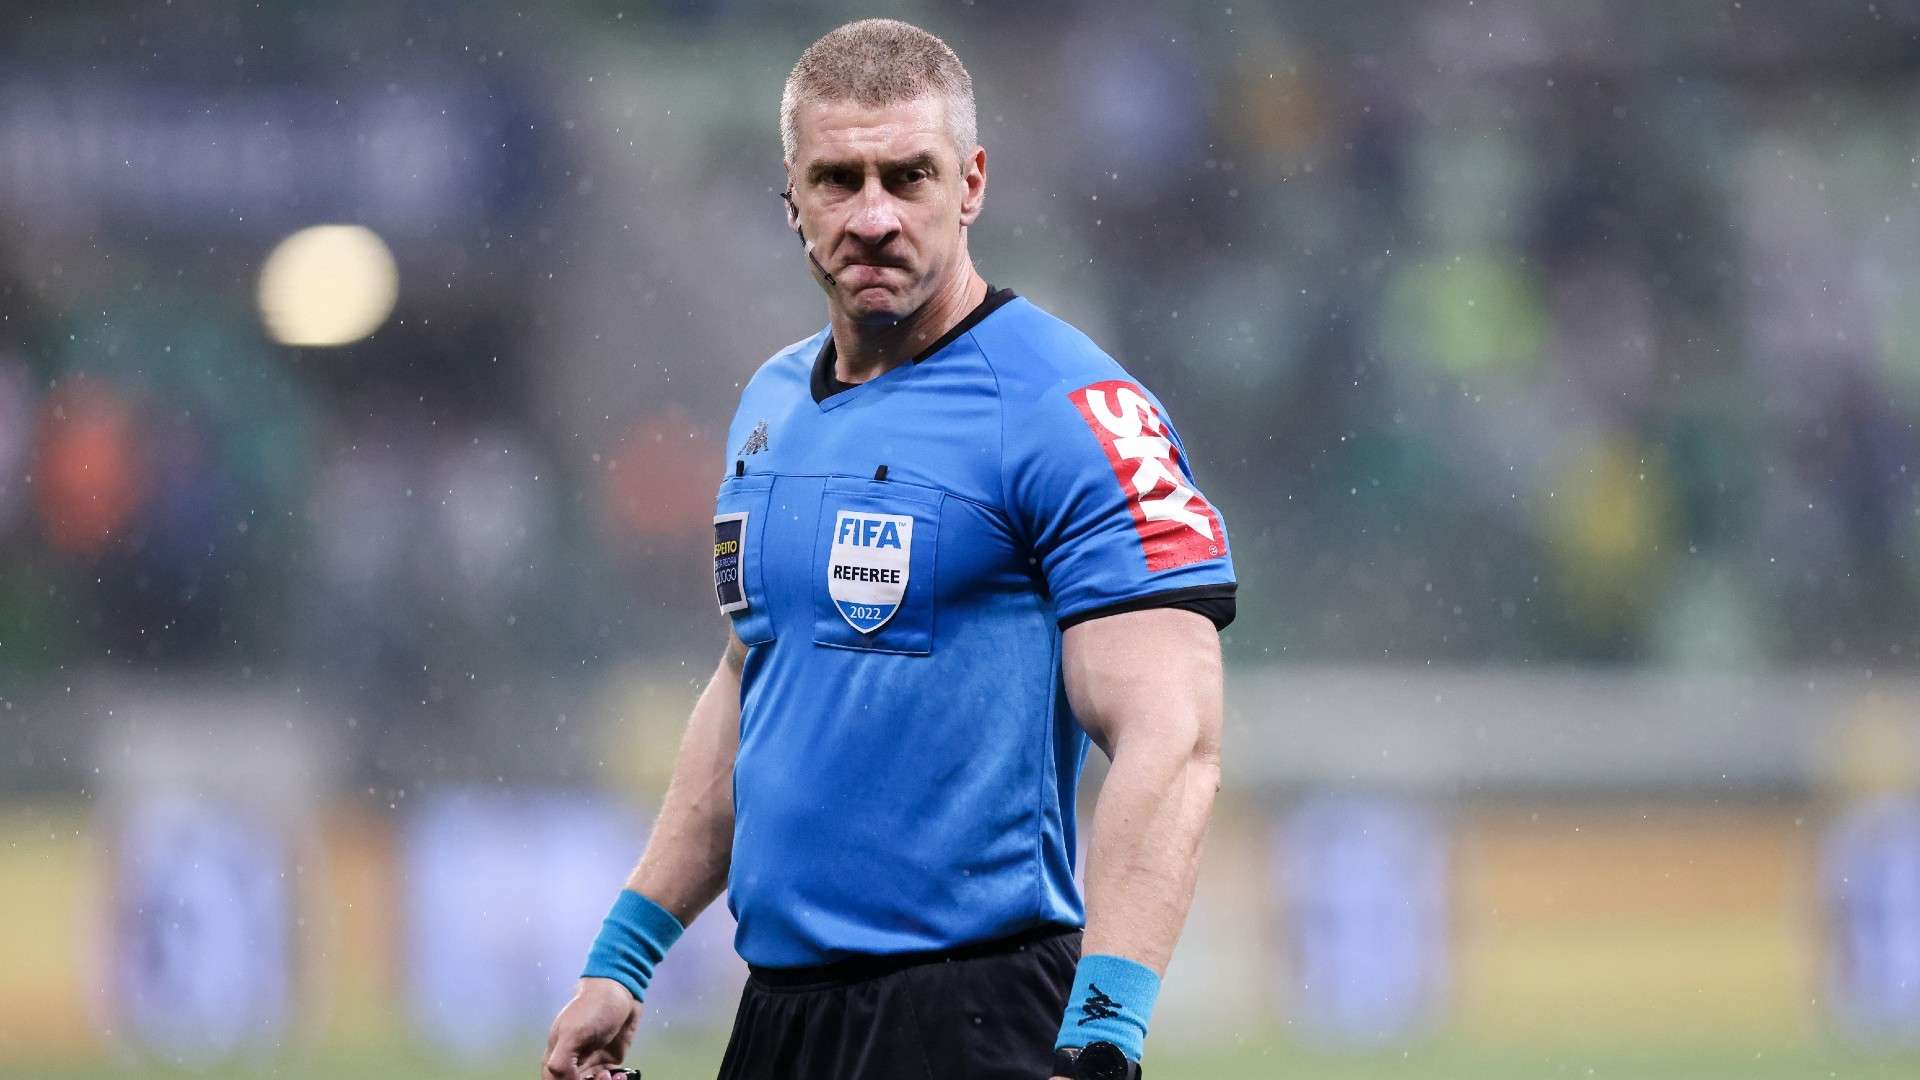 Anderson Daronco, referee